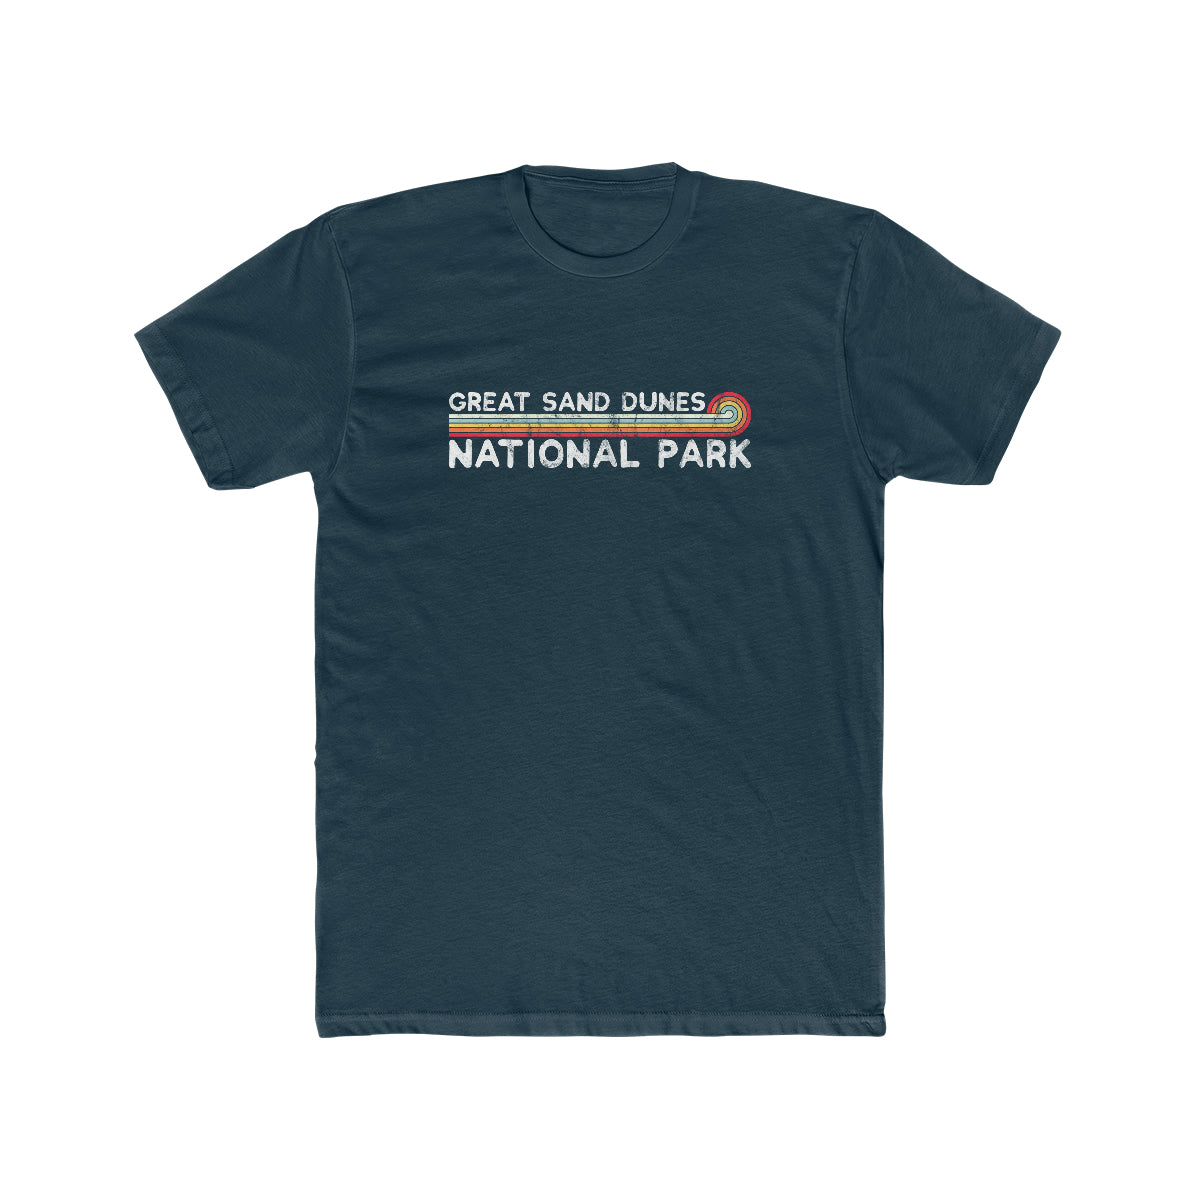 Great Sand Dunes National Park T-Shirt - Vintage Stretched Sunrise